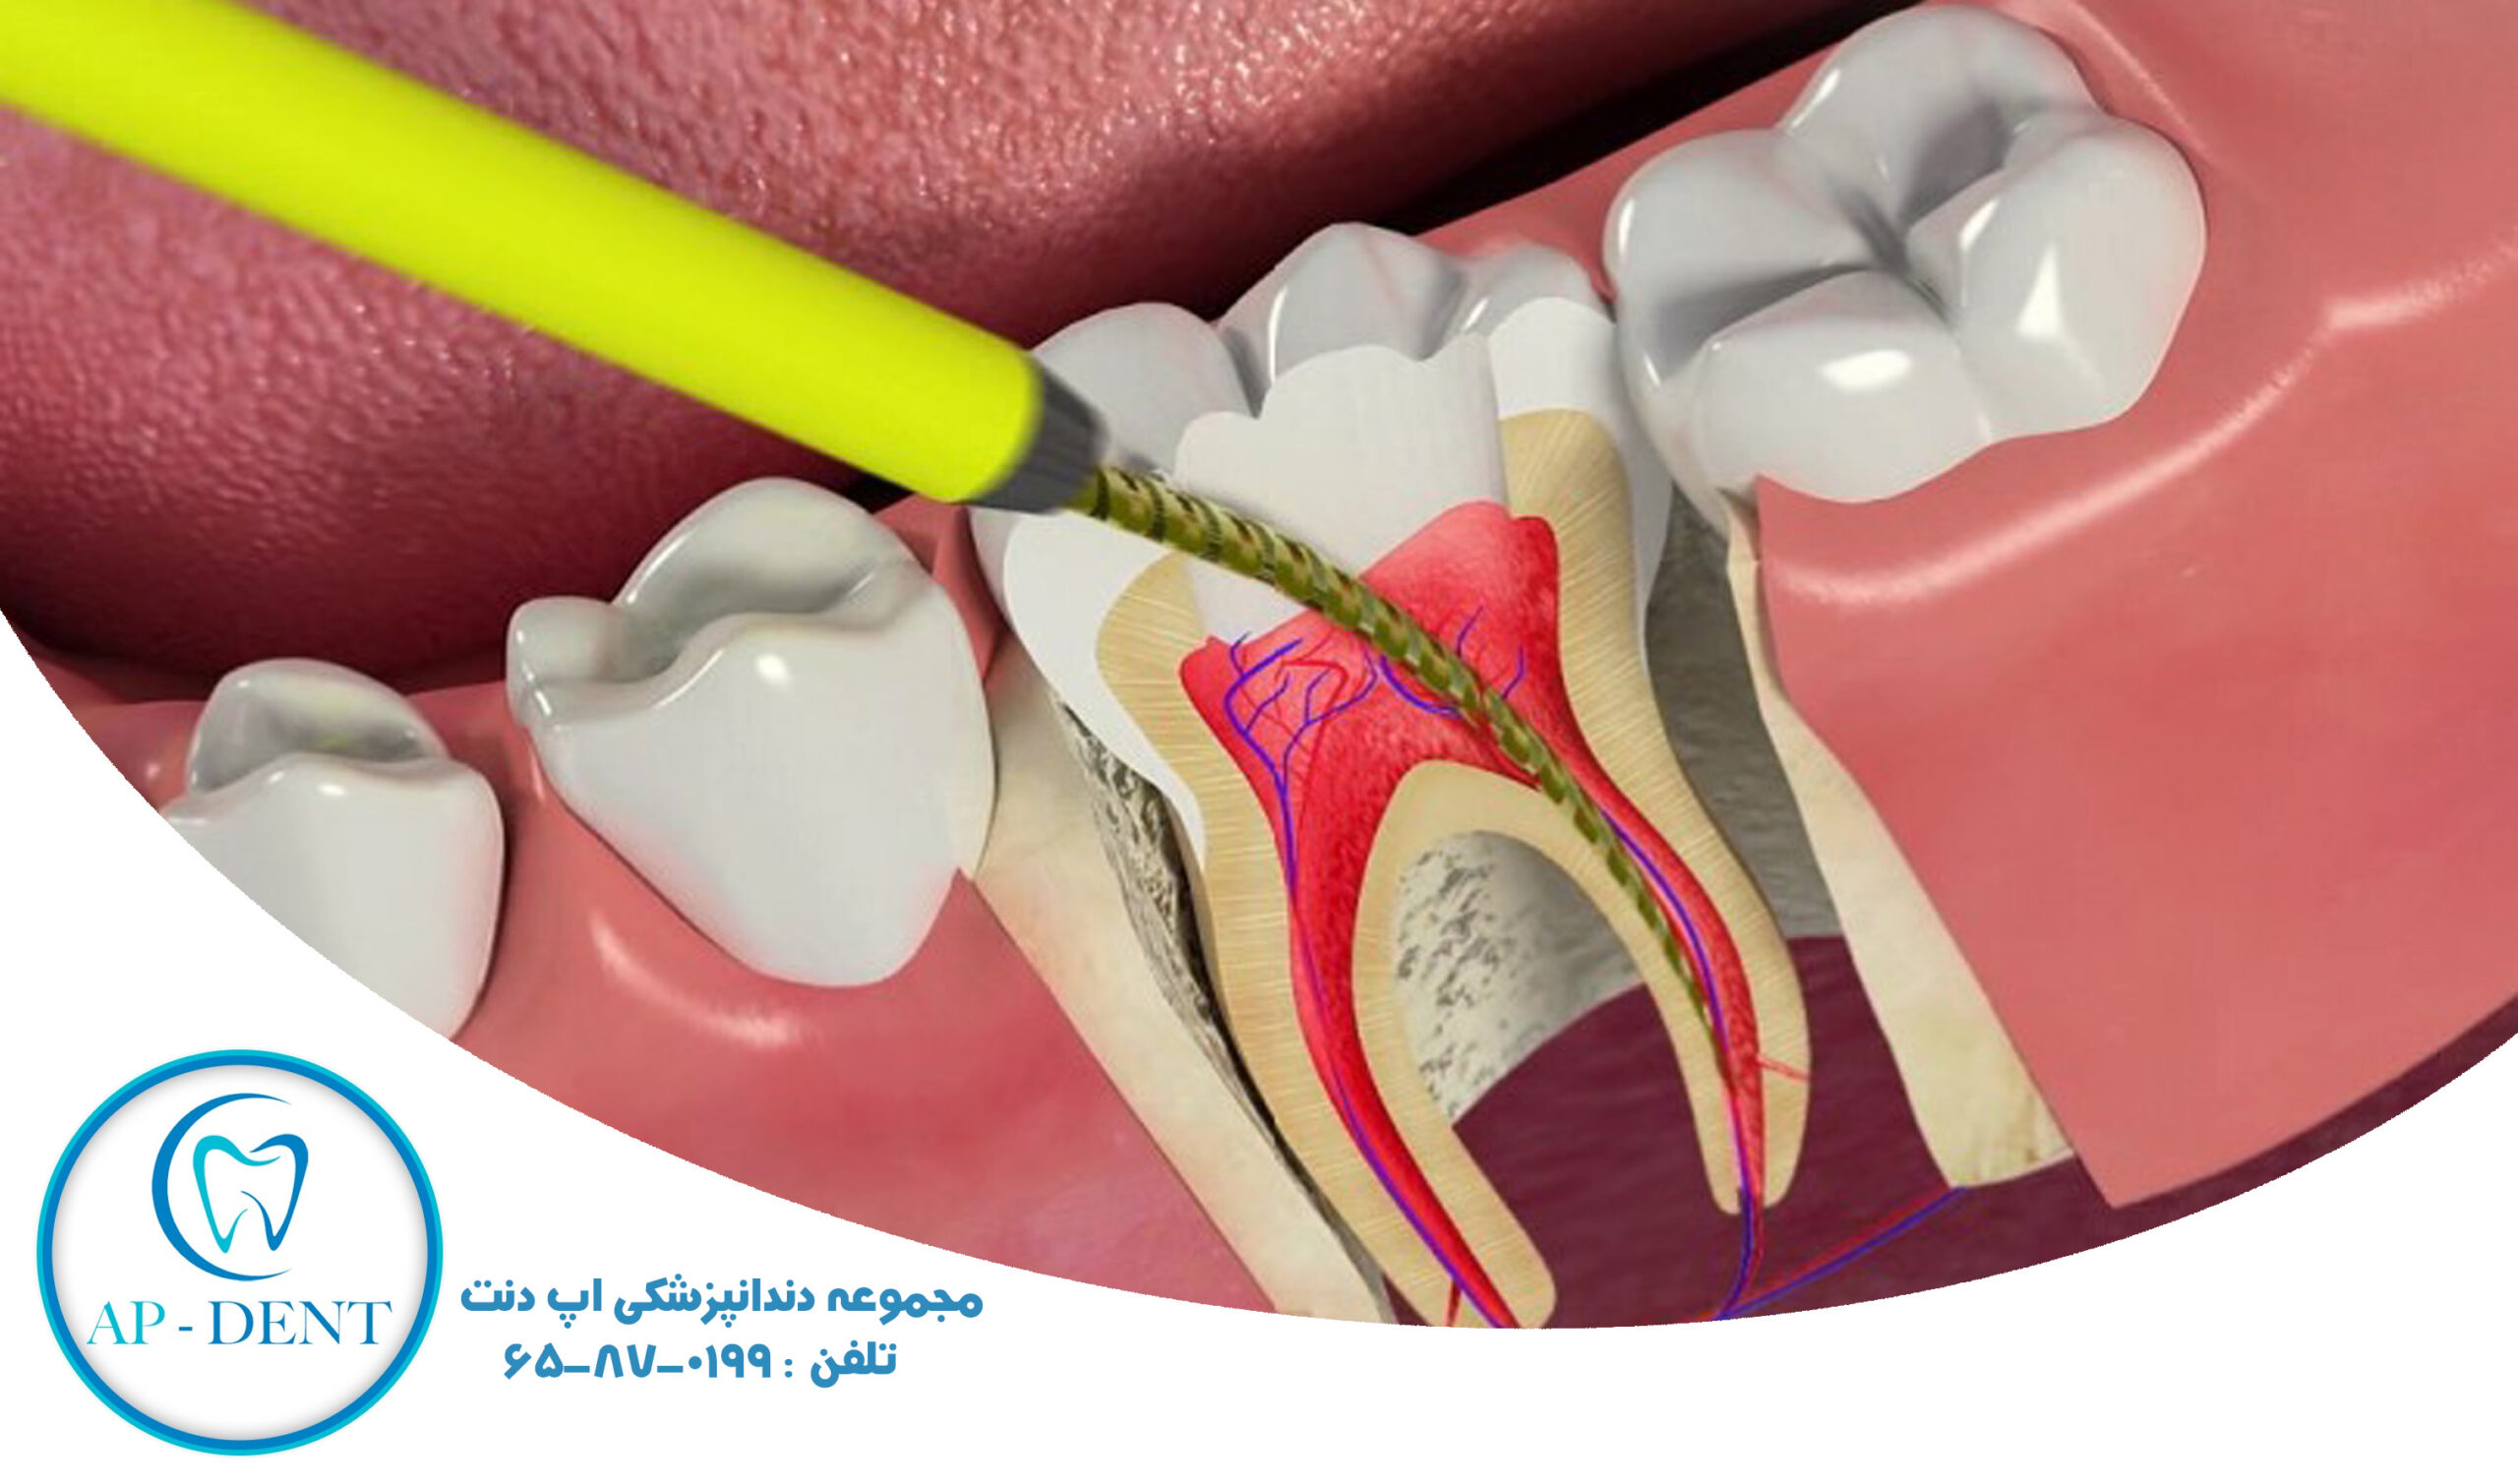 <strong>درمان ریشه دندان با دستگاه اندو روتاری و تجهیزات مرتبط با آن  </strong>